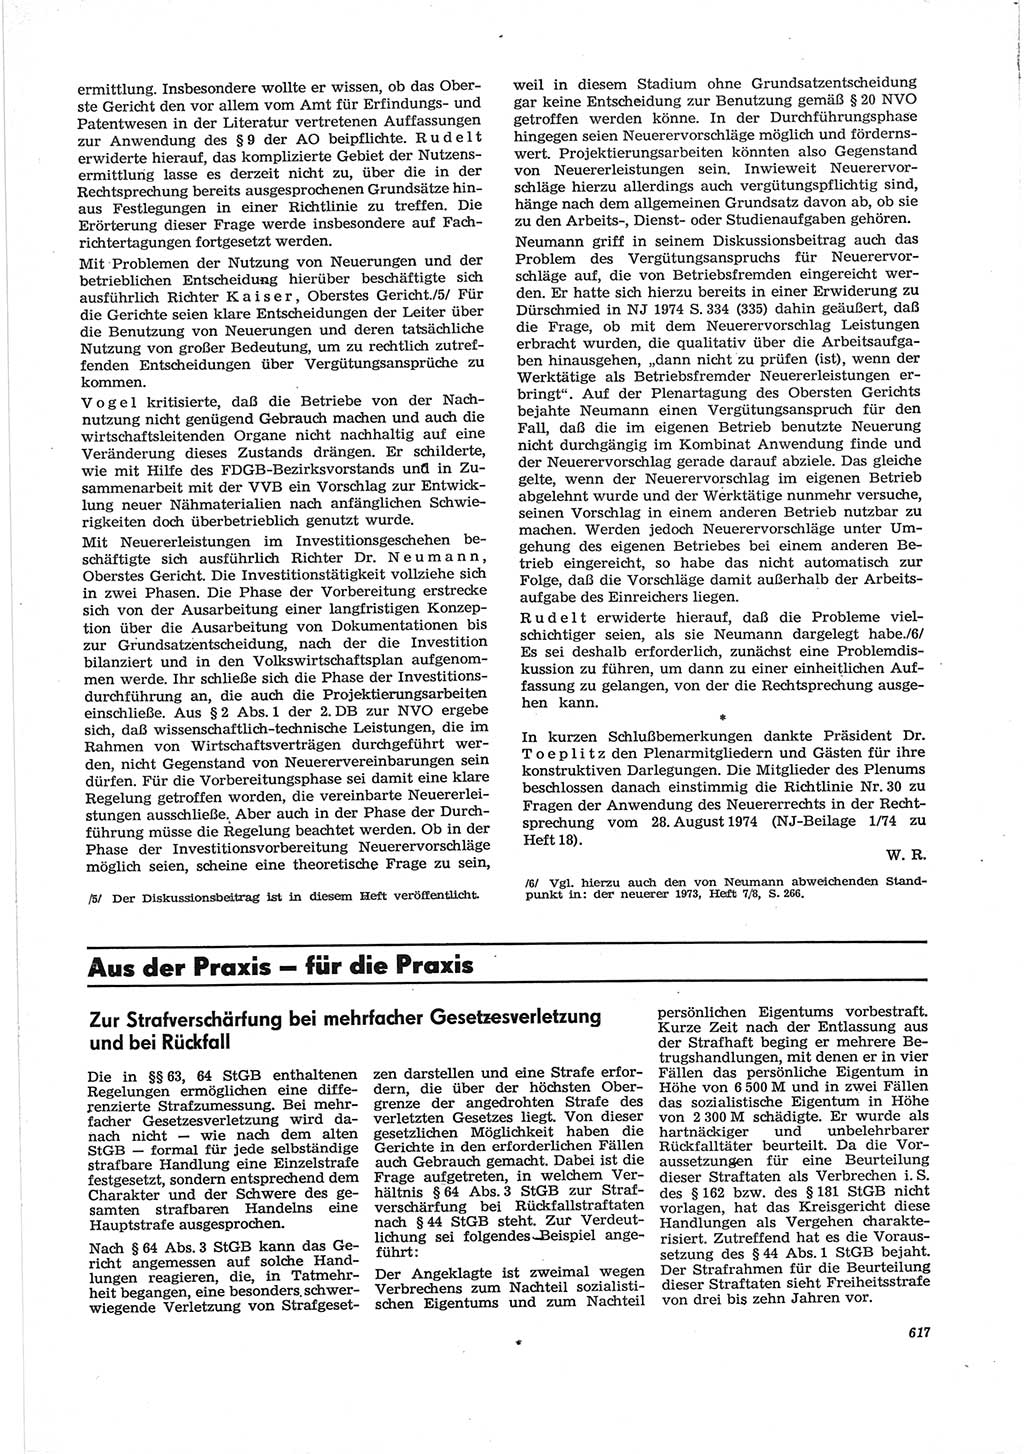 Neue Justiz (NJ), Zeitschrift für Recht und Rechtswissenschaft [Deutsche Demokratische Republik (DDR)], 28. Jahrgang 1974, Seite 617 (NJ DDR 1974, S. 617)